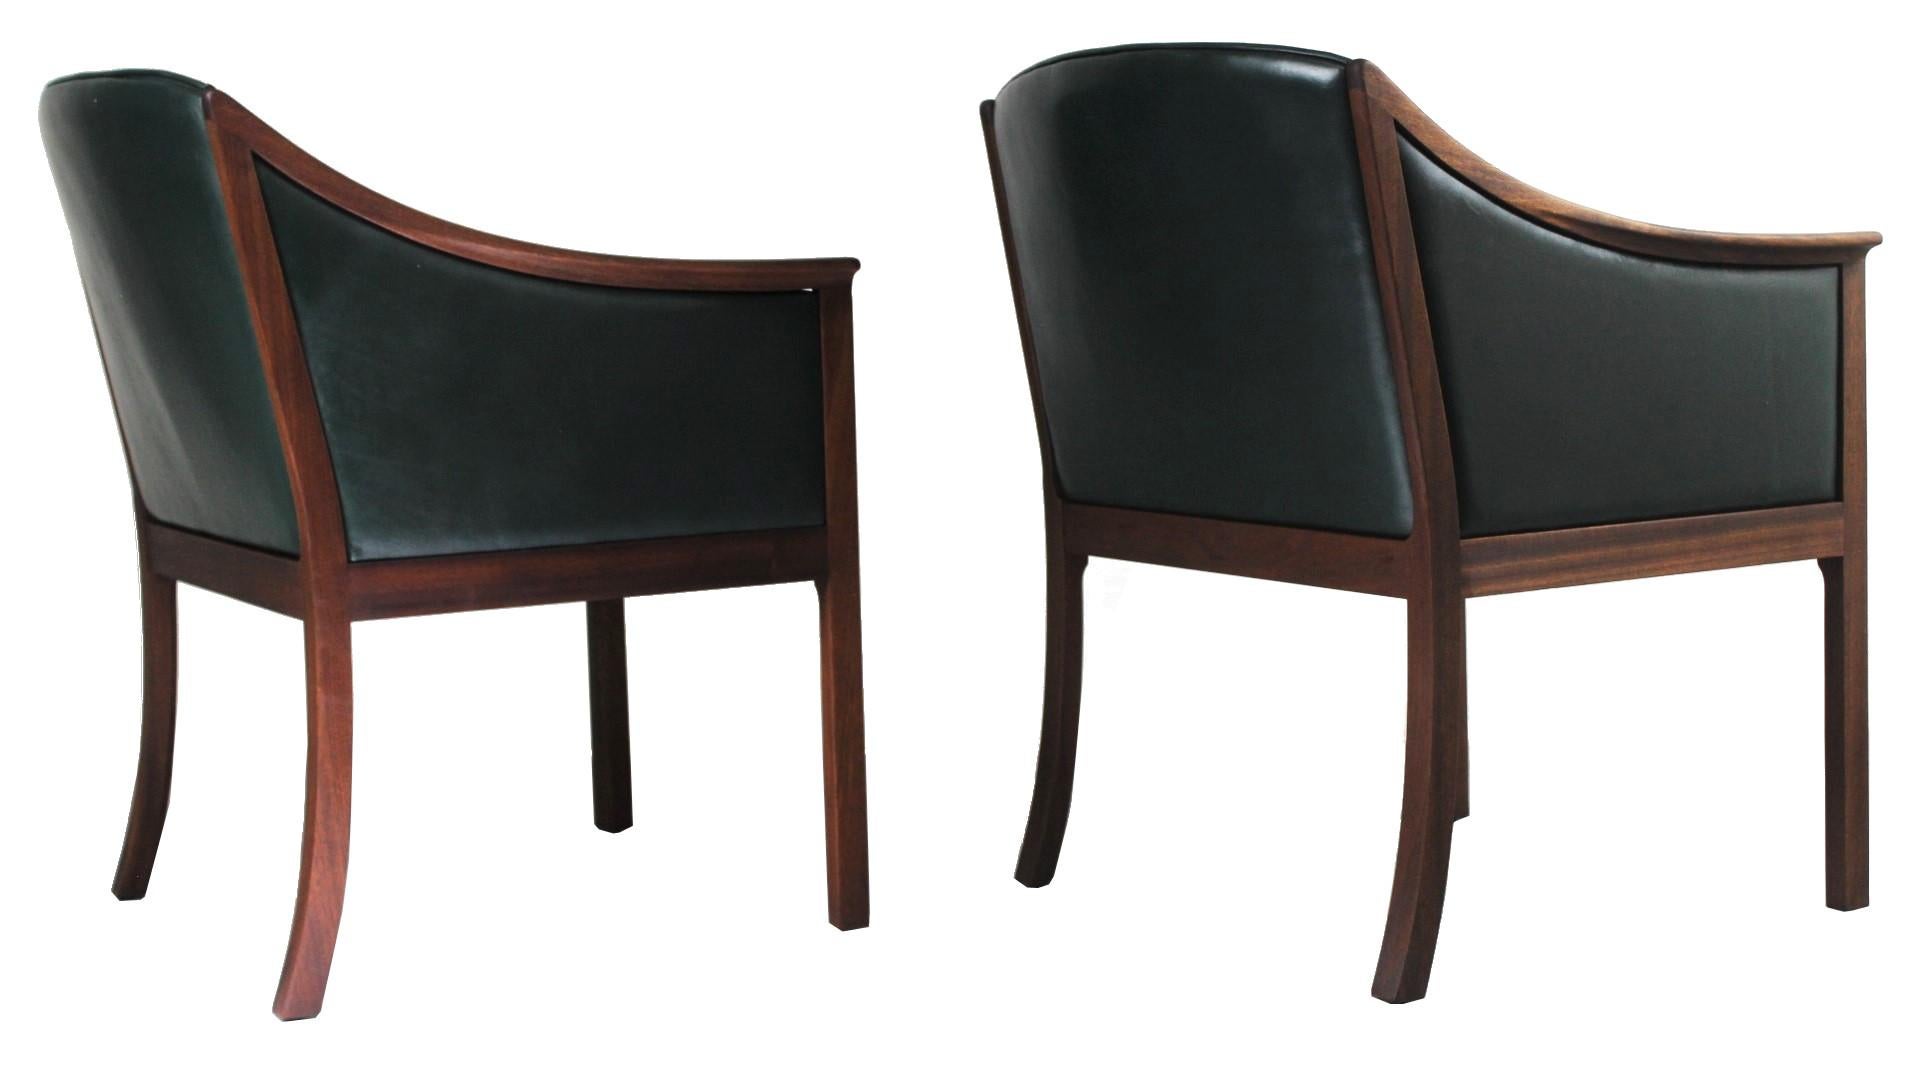 1950s Pair of Lounge Chairs, Ole Wanscher for PJ Møbler, Denmark (Dänisch)